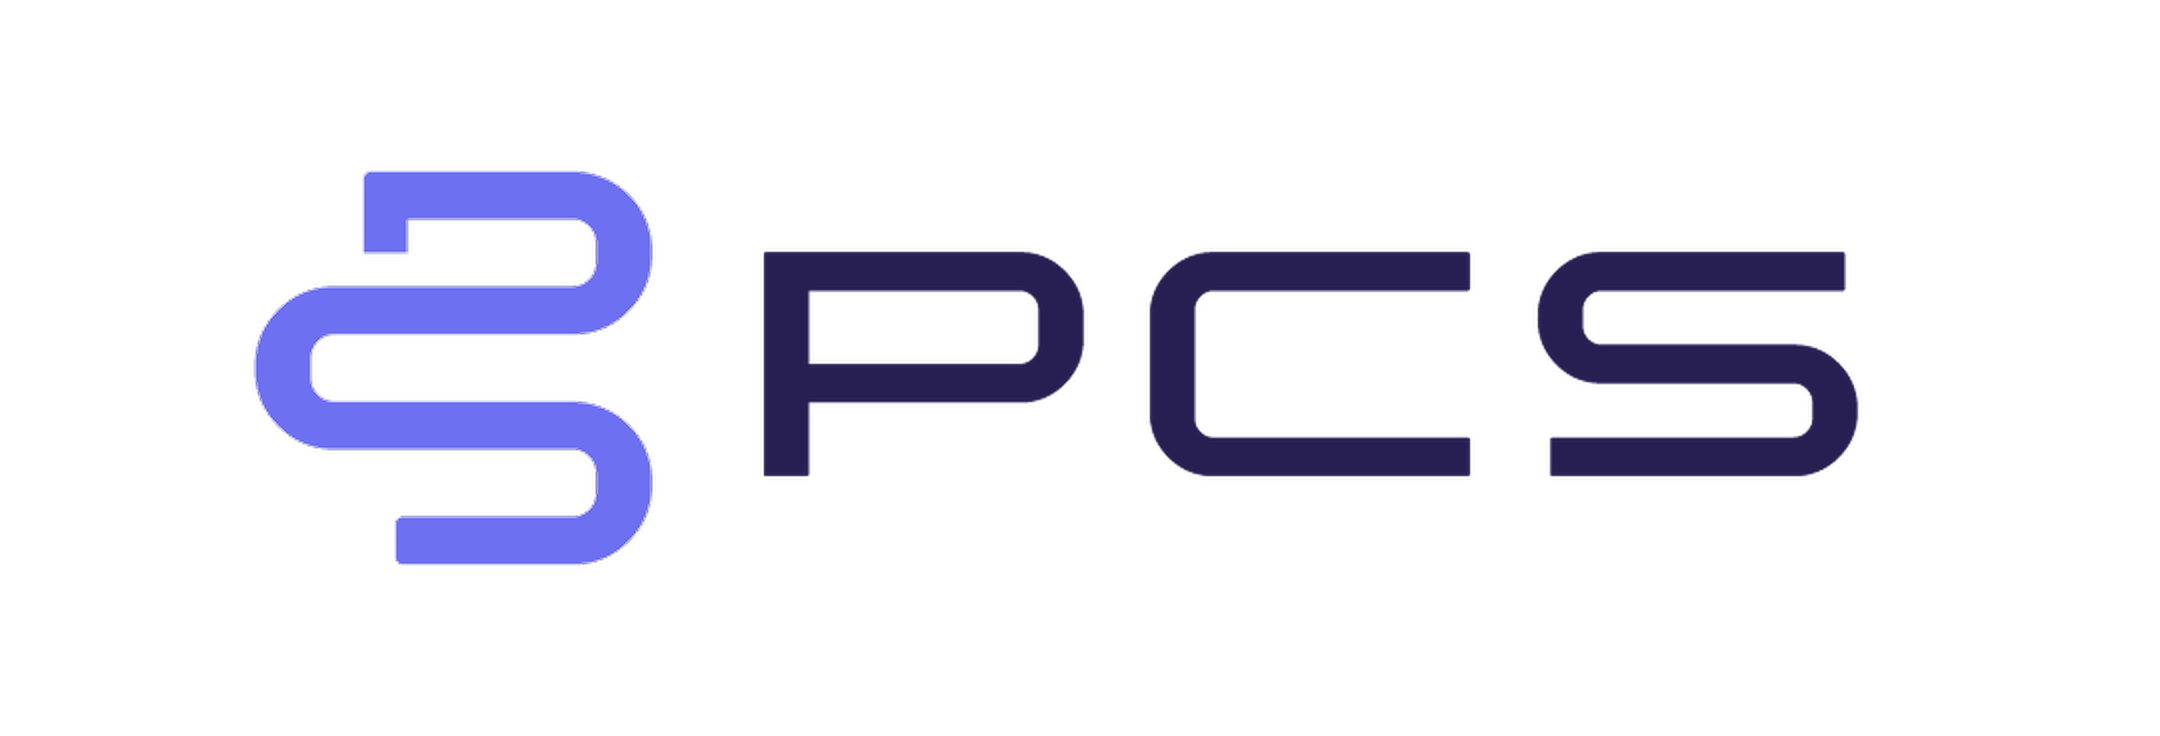 pcs full logo.v1